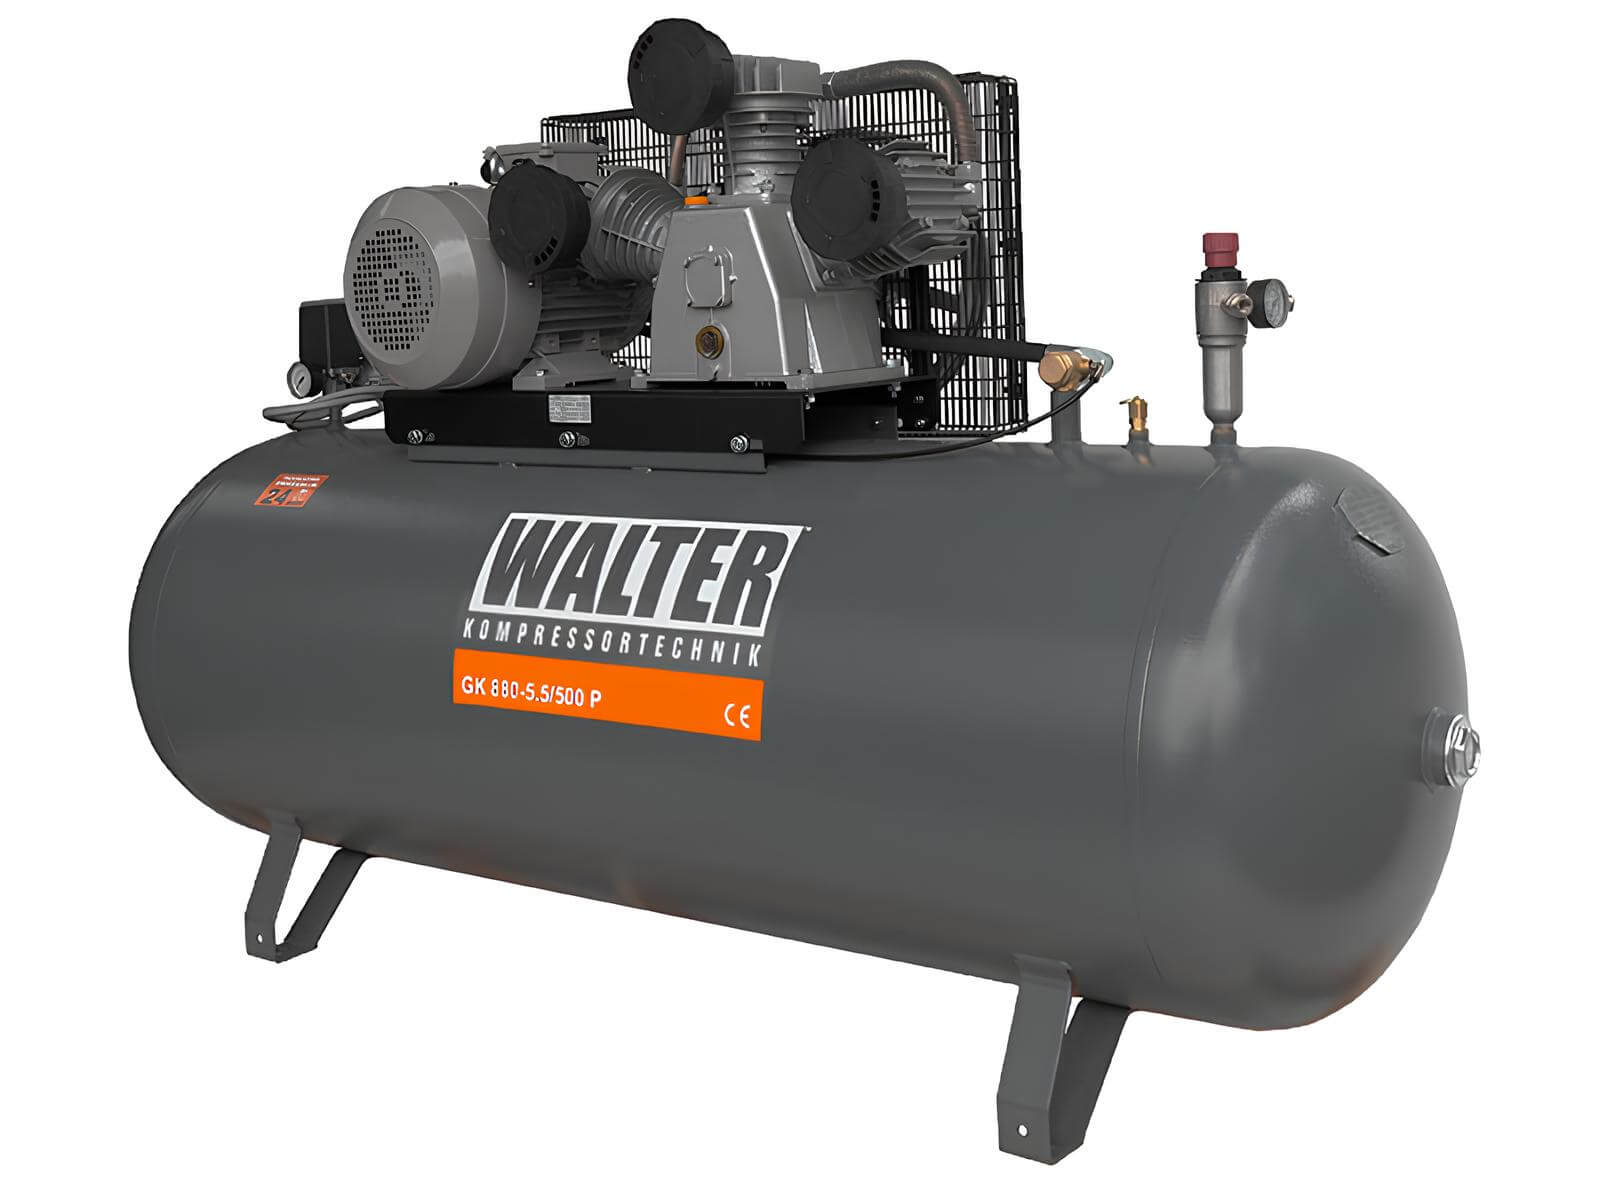 WALTER Litinový pístový kompresor GK880-55-500 příkon 5,5 kW, sací výkon 880 l/min, tlak 10 bar, vzdušník 500 l, napětí 400/50 V/Hz